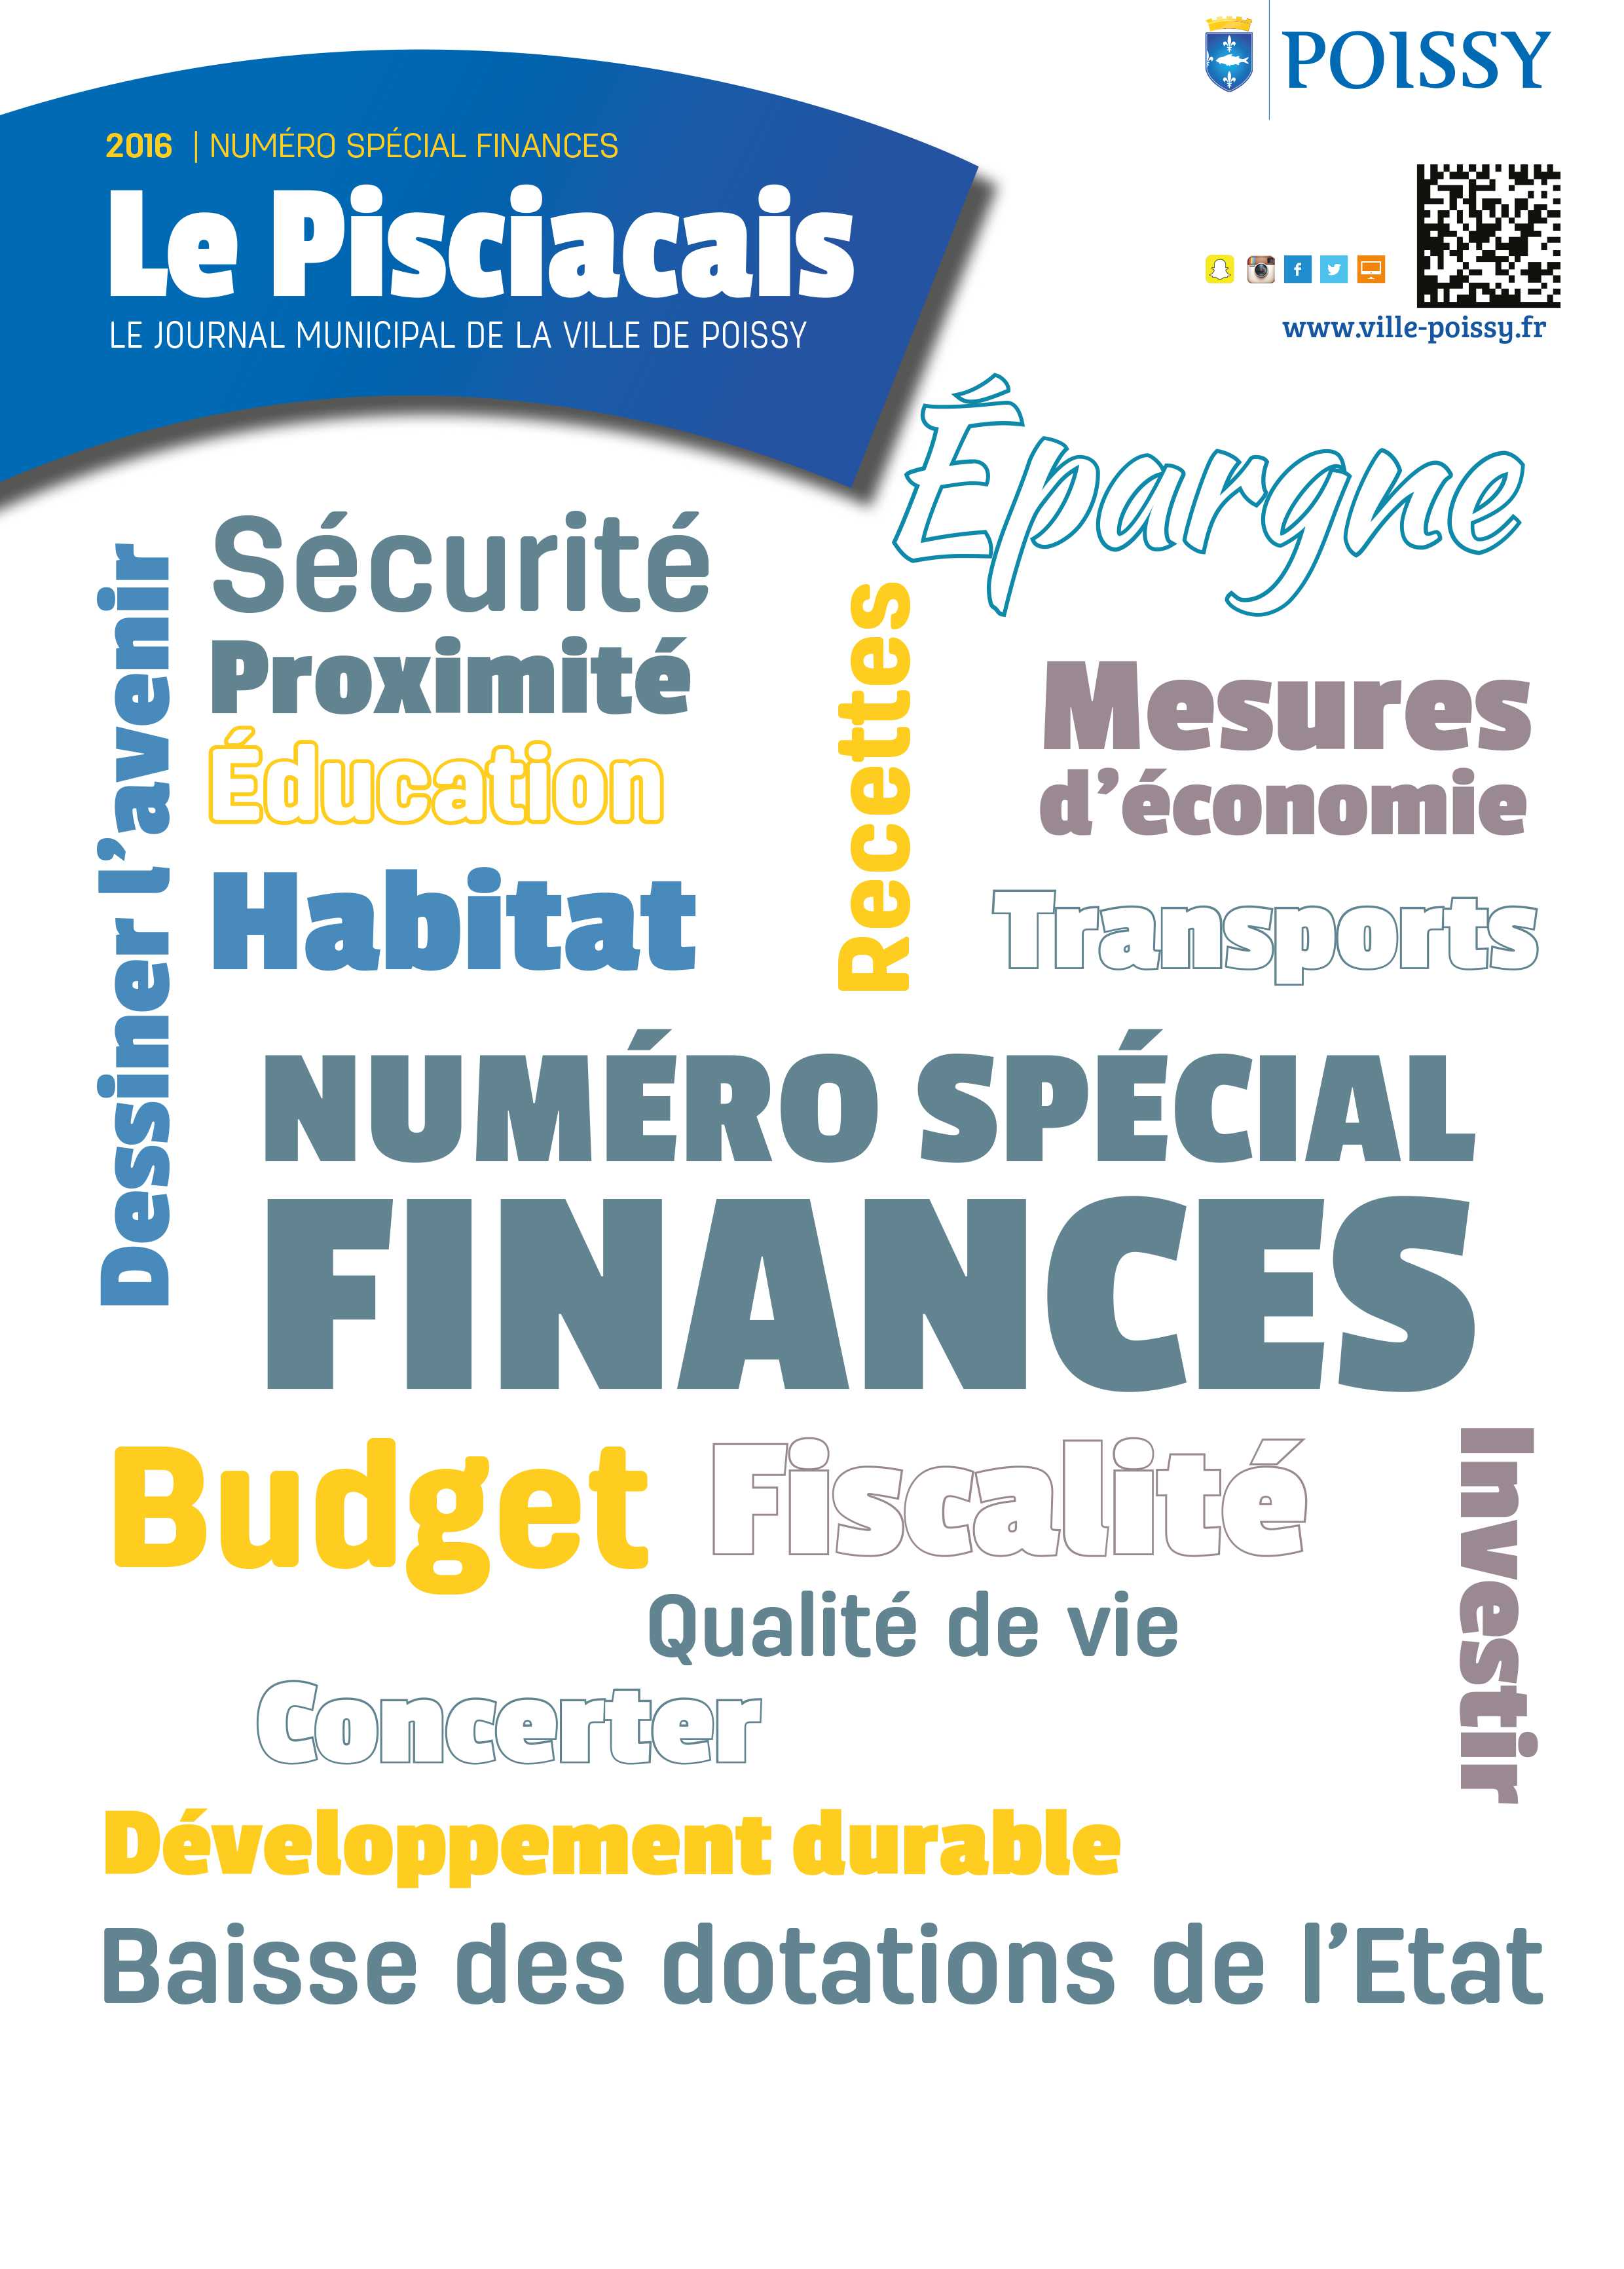 specialfinances2016